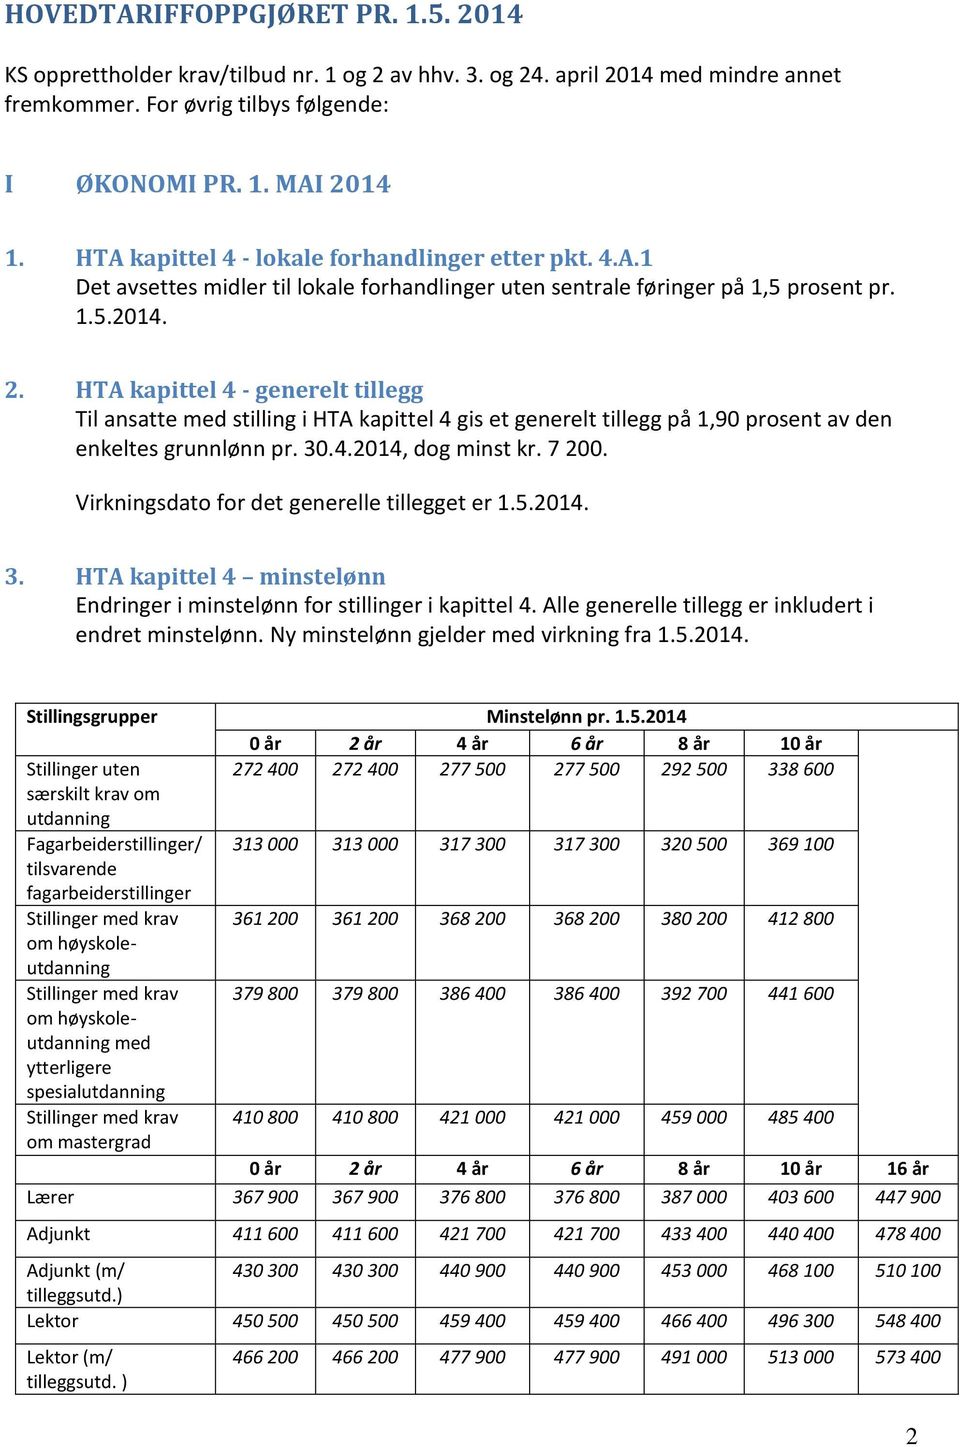 HTA kapittel 4 - generelt tillegg Til ansatte med stilling i HTA kapittel 4 gis et generelt tillegg på 1,90 prosent av den enkeltes grunnlønn pr. 30.4.2014, dog minst kr. 7 200.